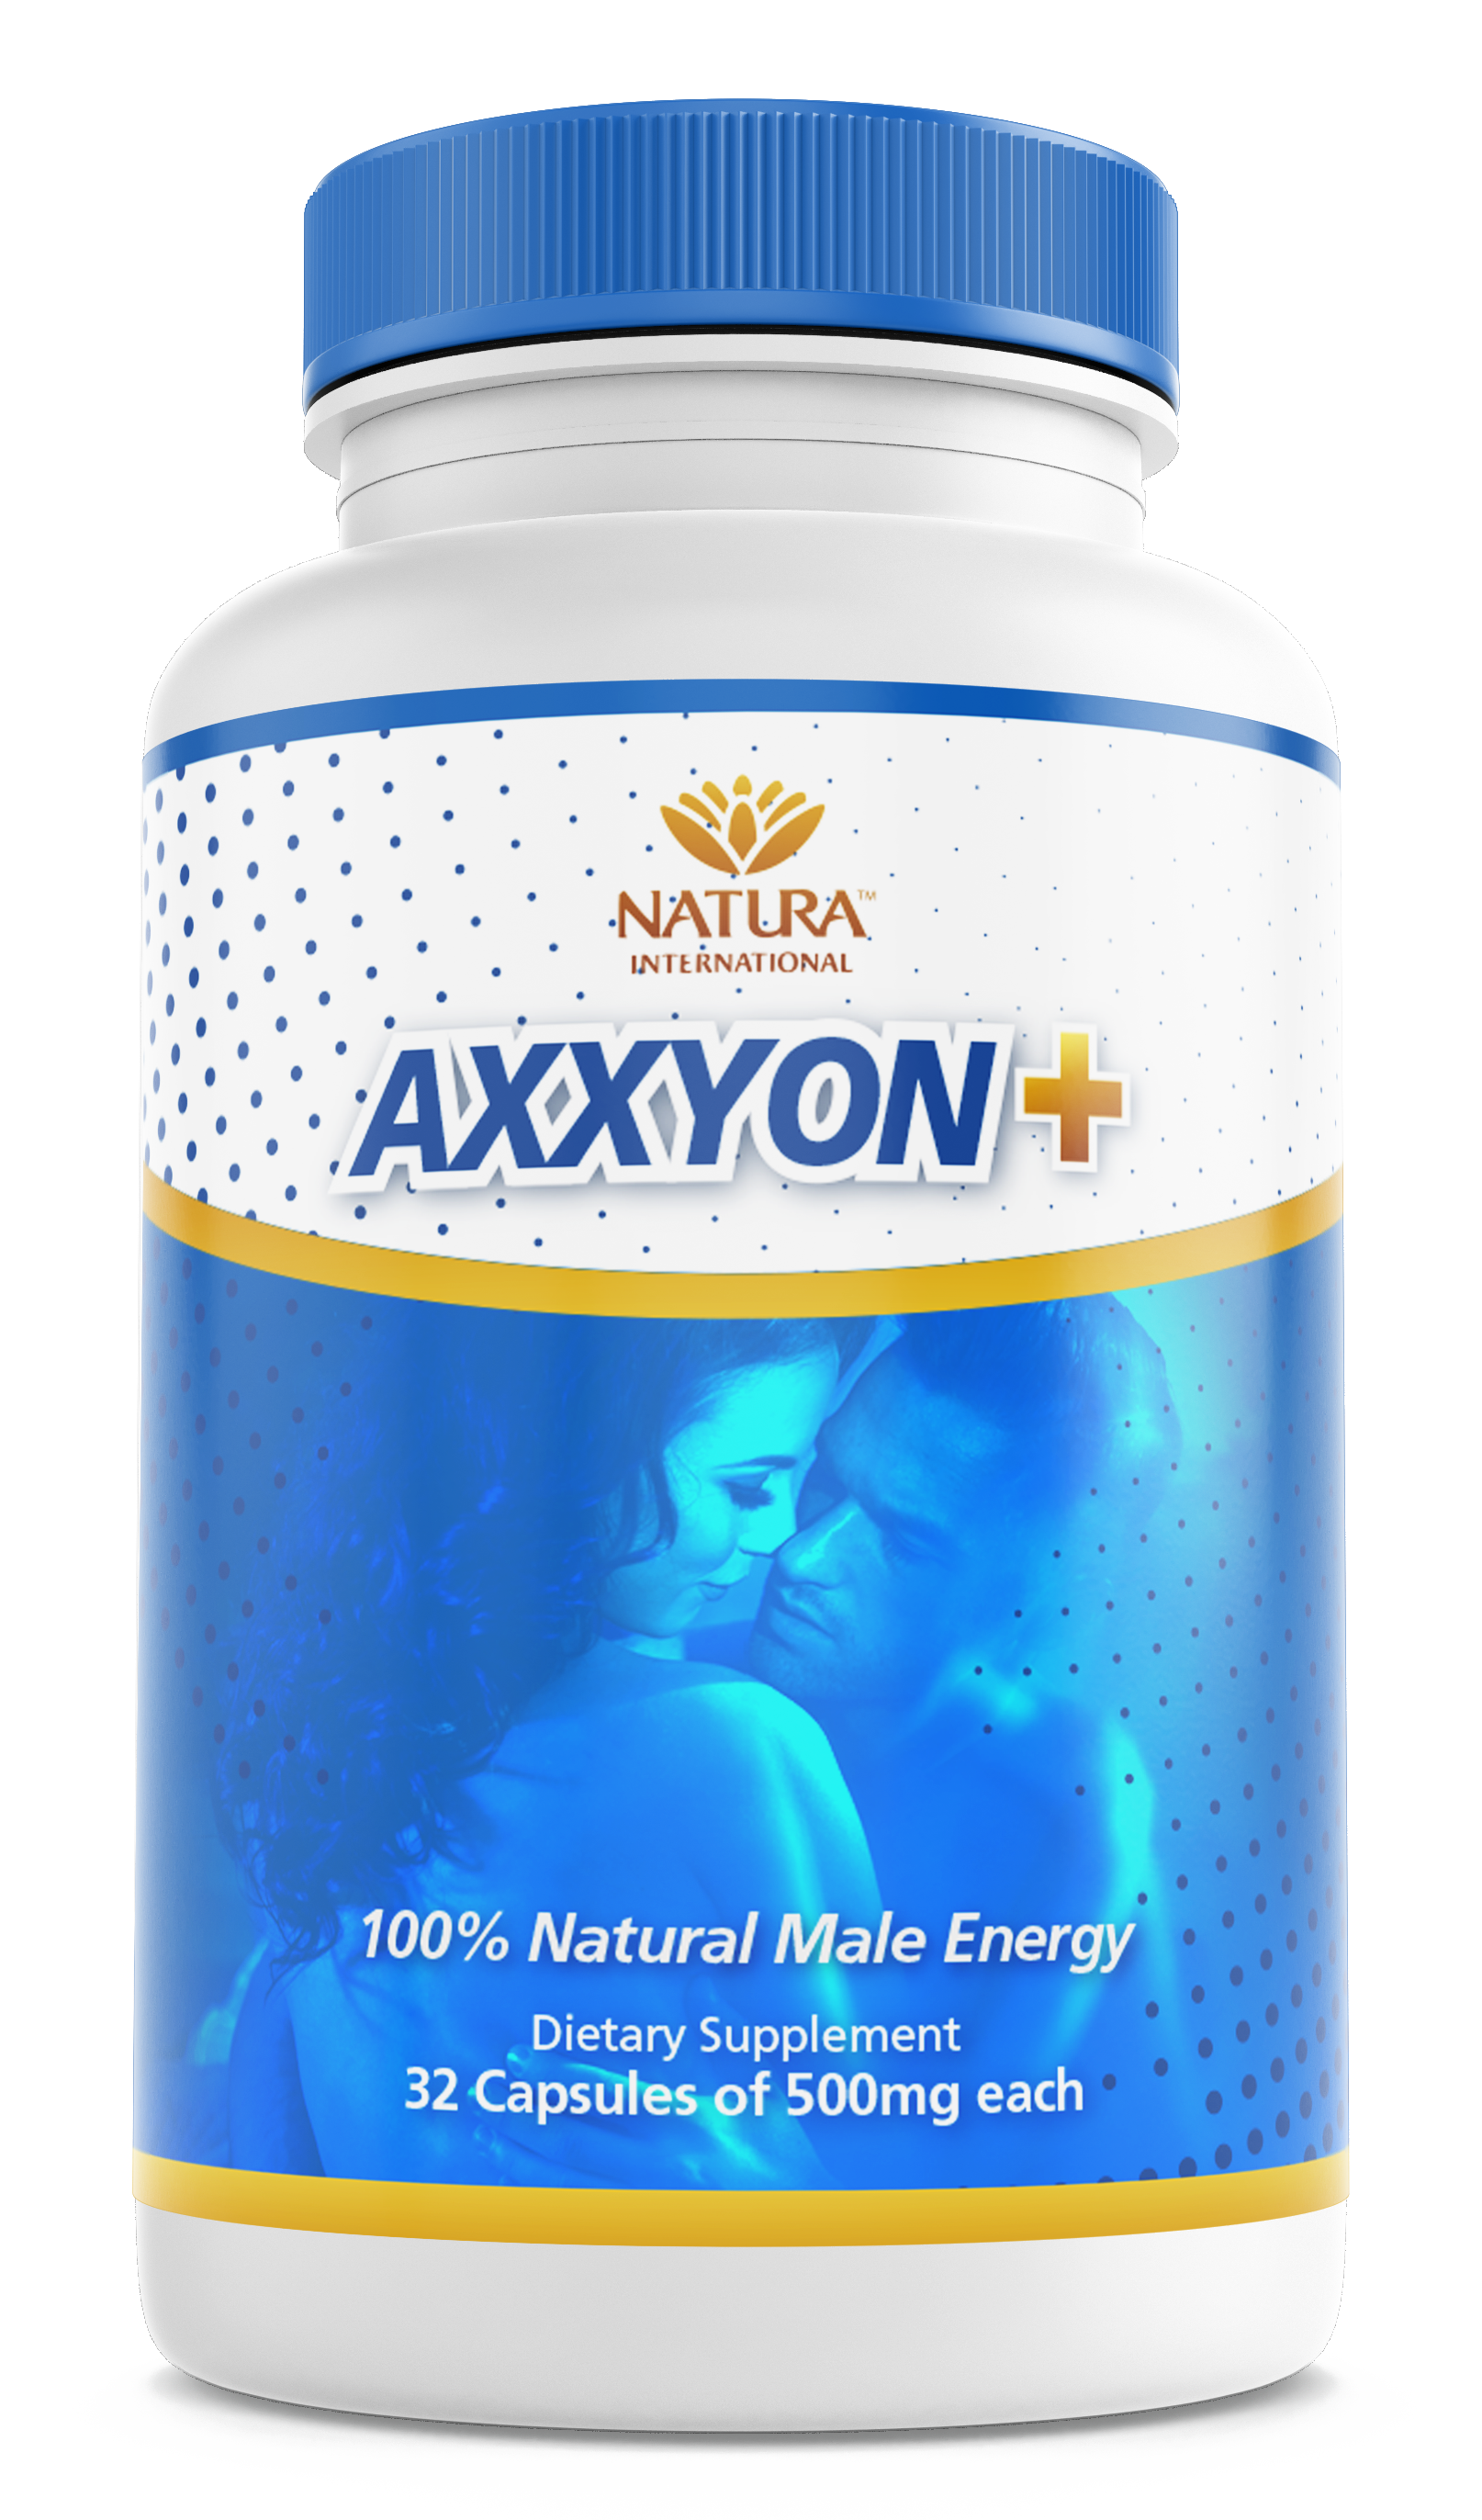 axxyon-producto